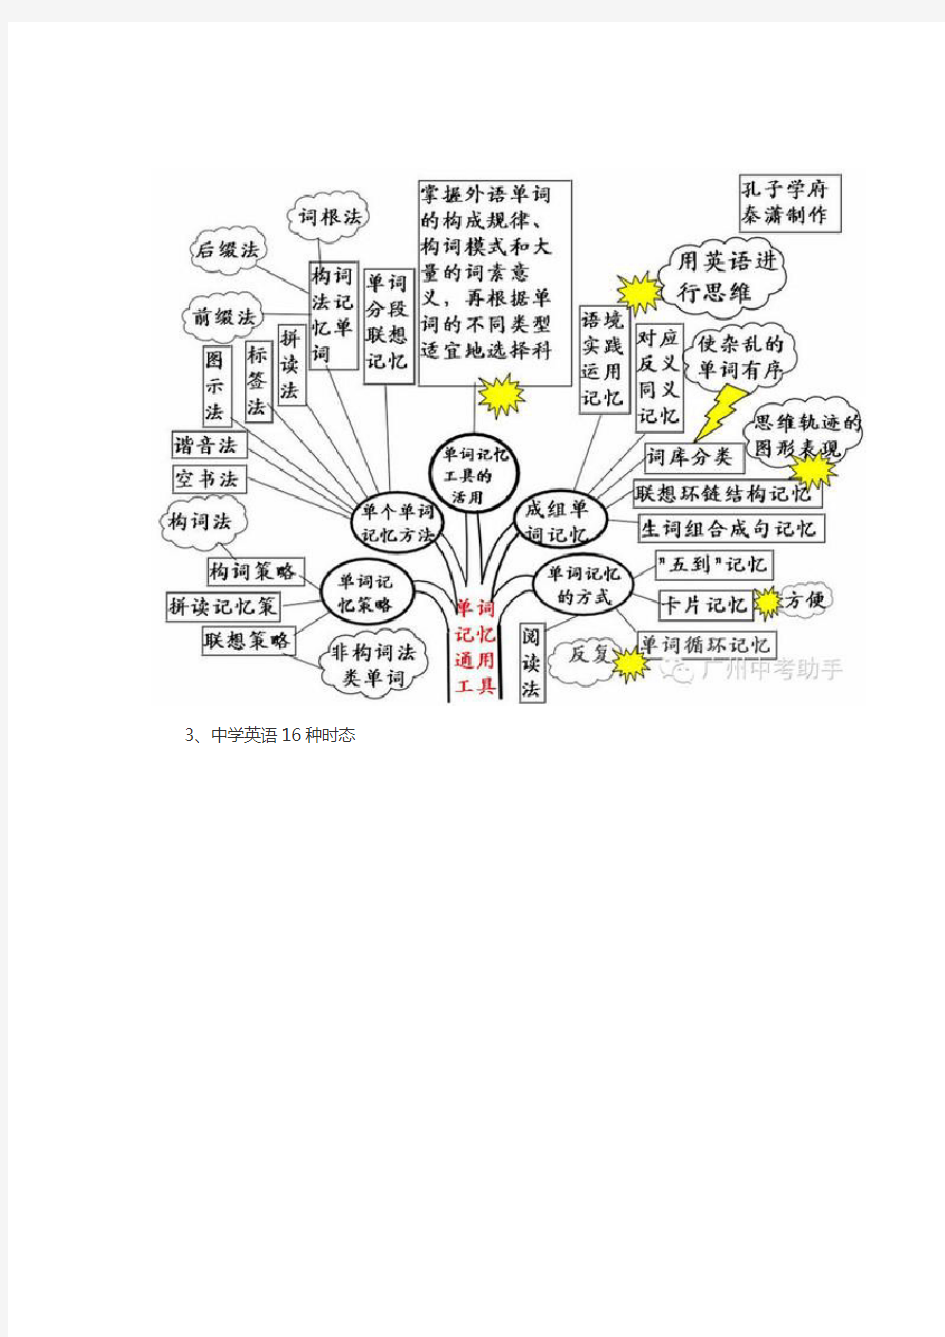 英语语法知识树状图